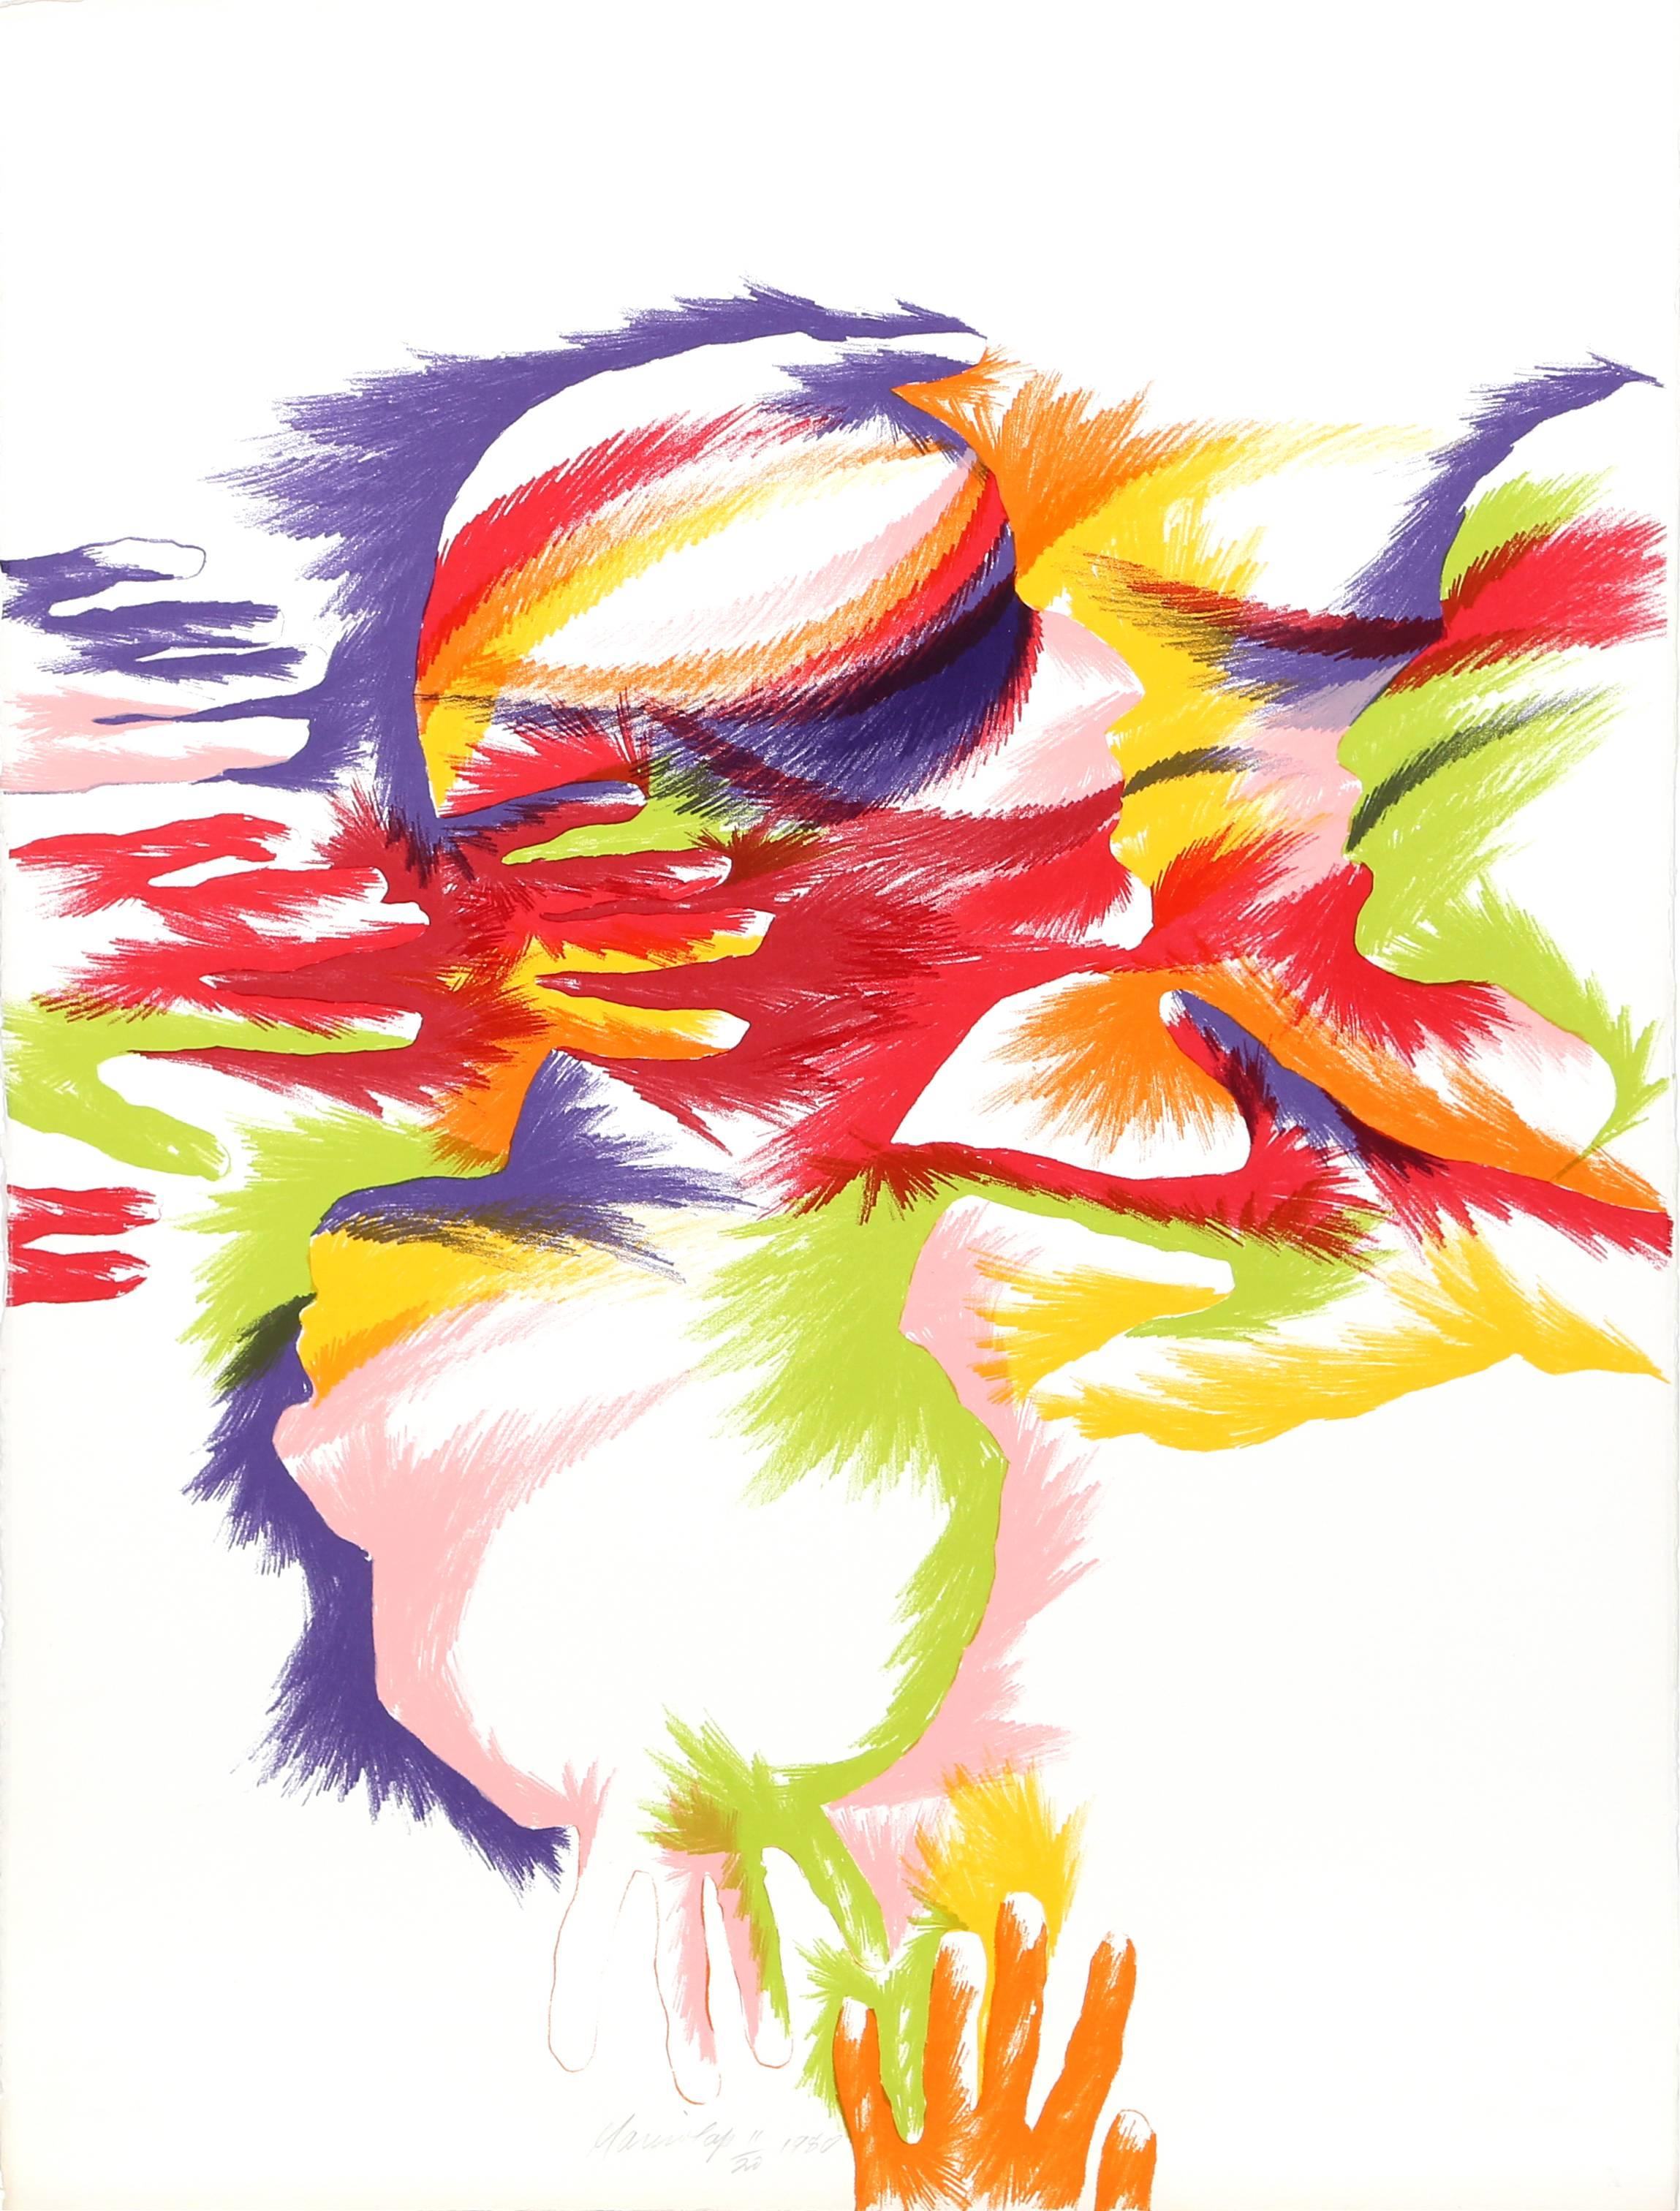 Artistics : Marisol Escobar, française/vénézuélienne (1930 - 2016)
Titre : Bourgeonnement
Année 1980
Médium : Lithographie, signée et numérotée au crayon 
Edition : 150 ; 20 AP
Taille : 31 in. x 22 in. (78.74 cm x 55.88 cm)